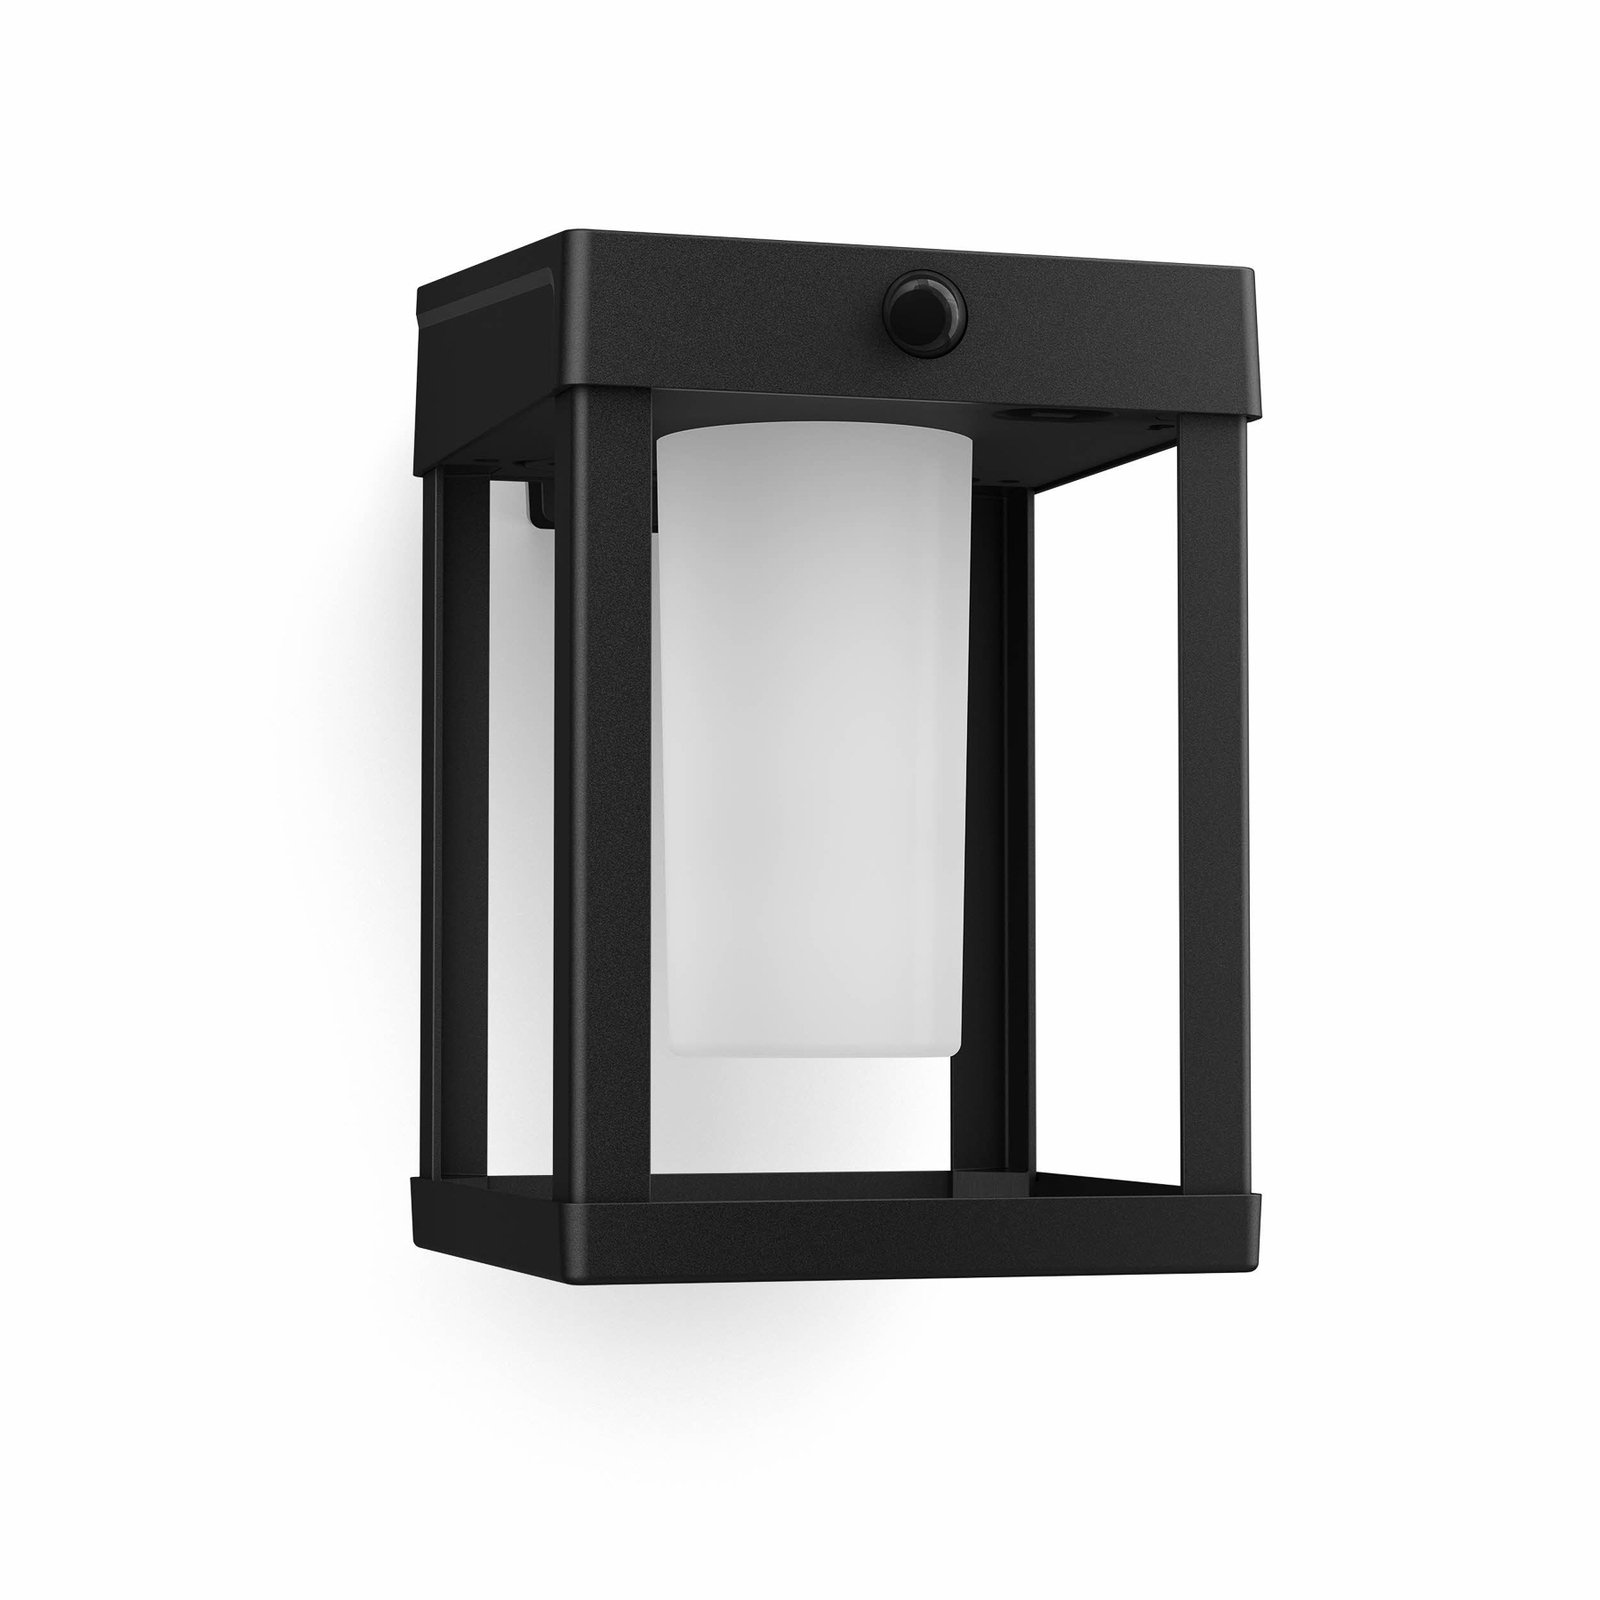 Kinkiet LED Philips Camille, czarny/biały, 14 x 14 cm